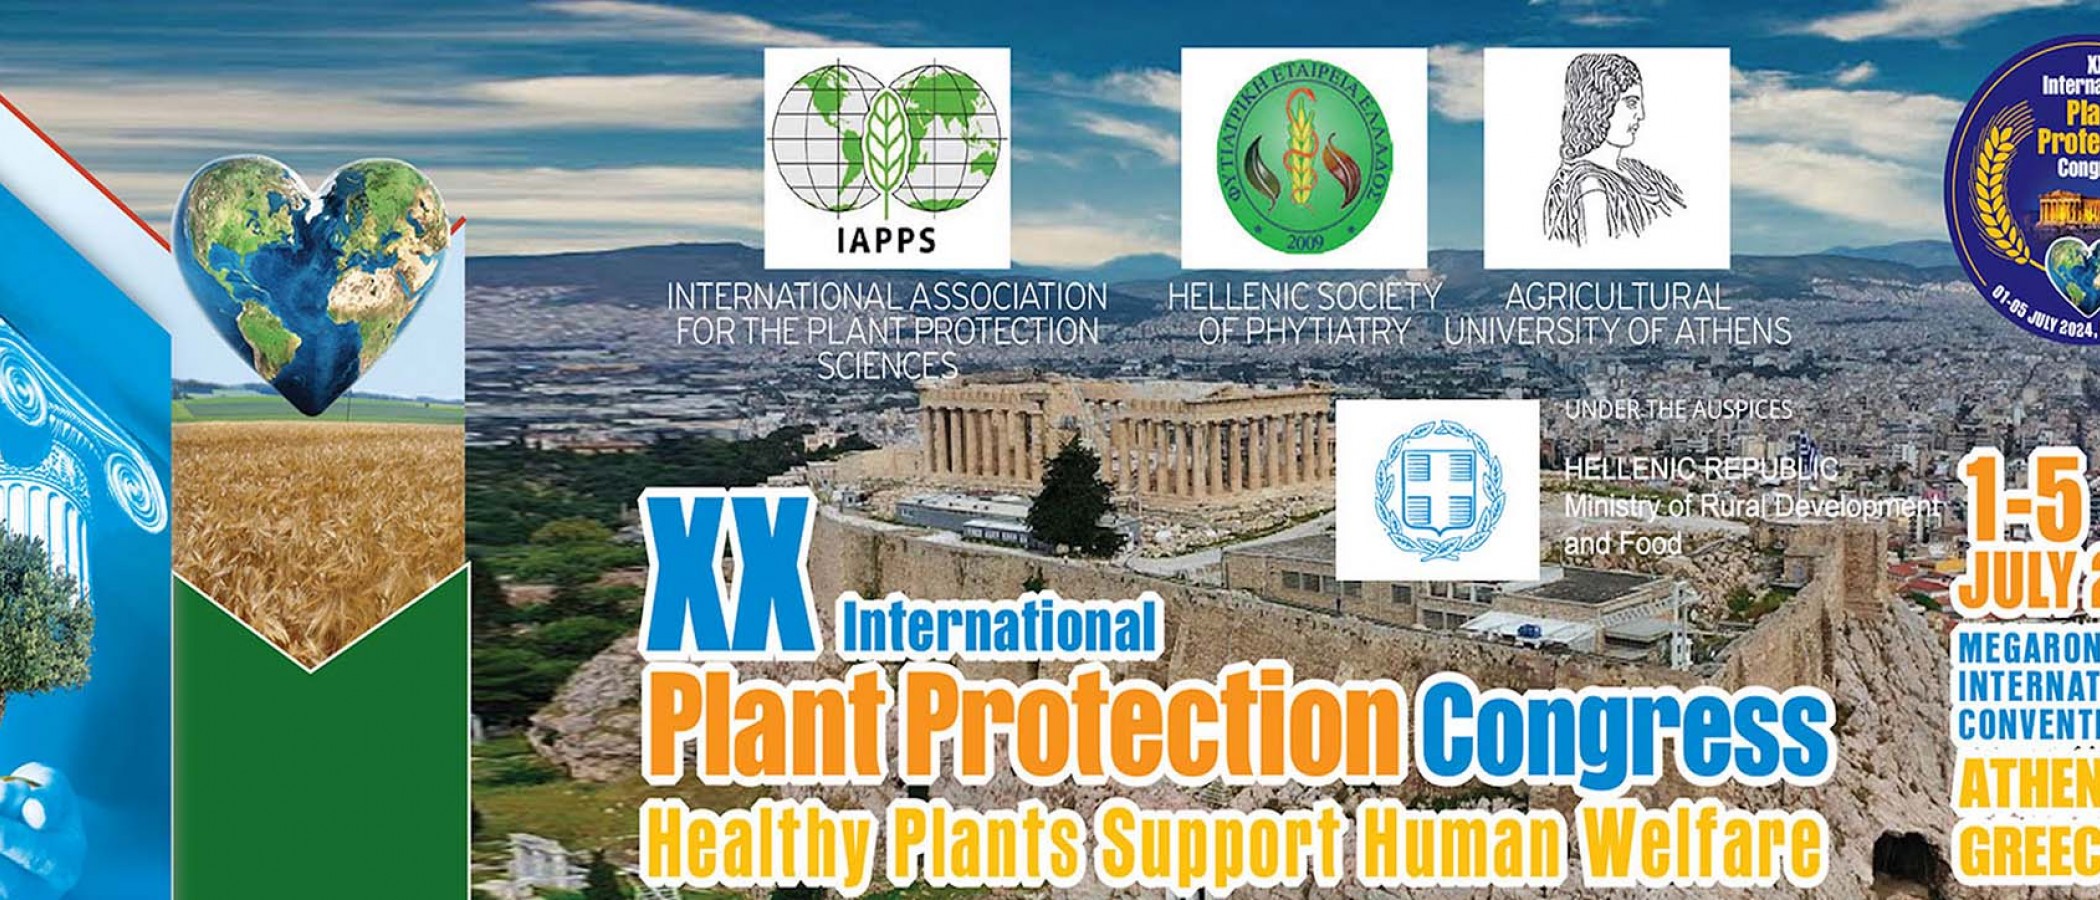 Διοργάνωση του ΧΧ International Plant Protection Congress με την αιγίδα του ΓΠΑ